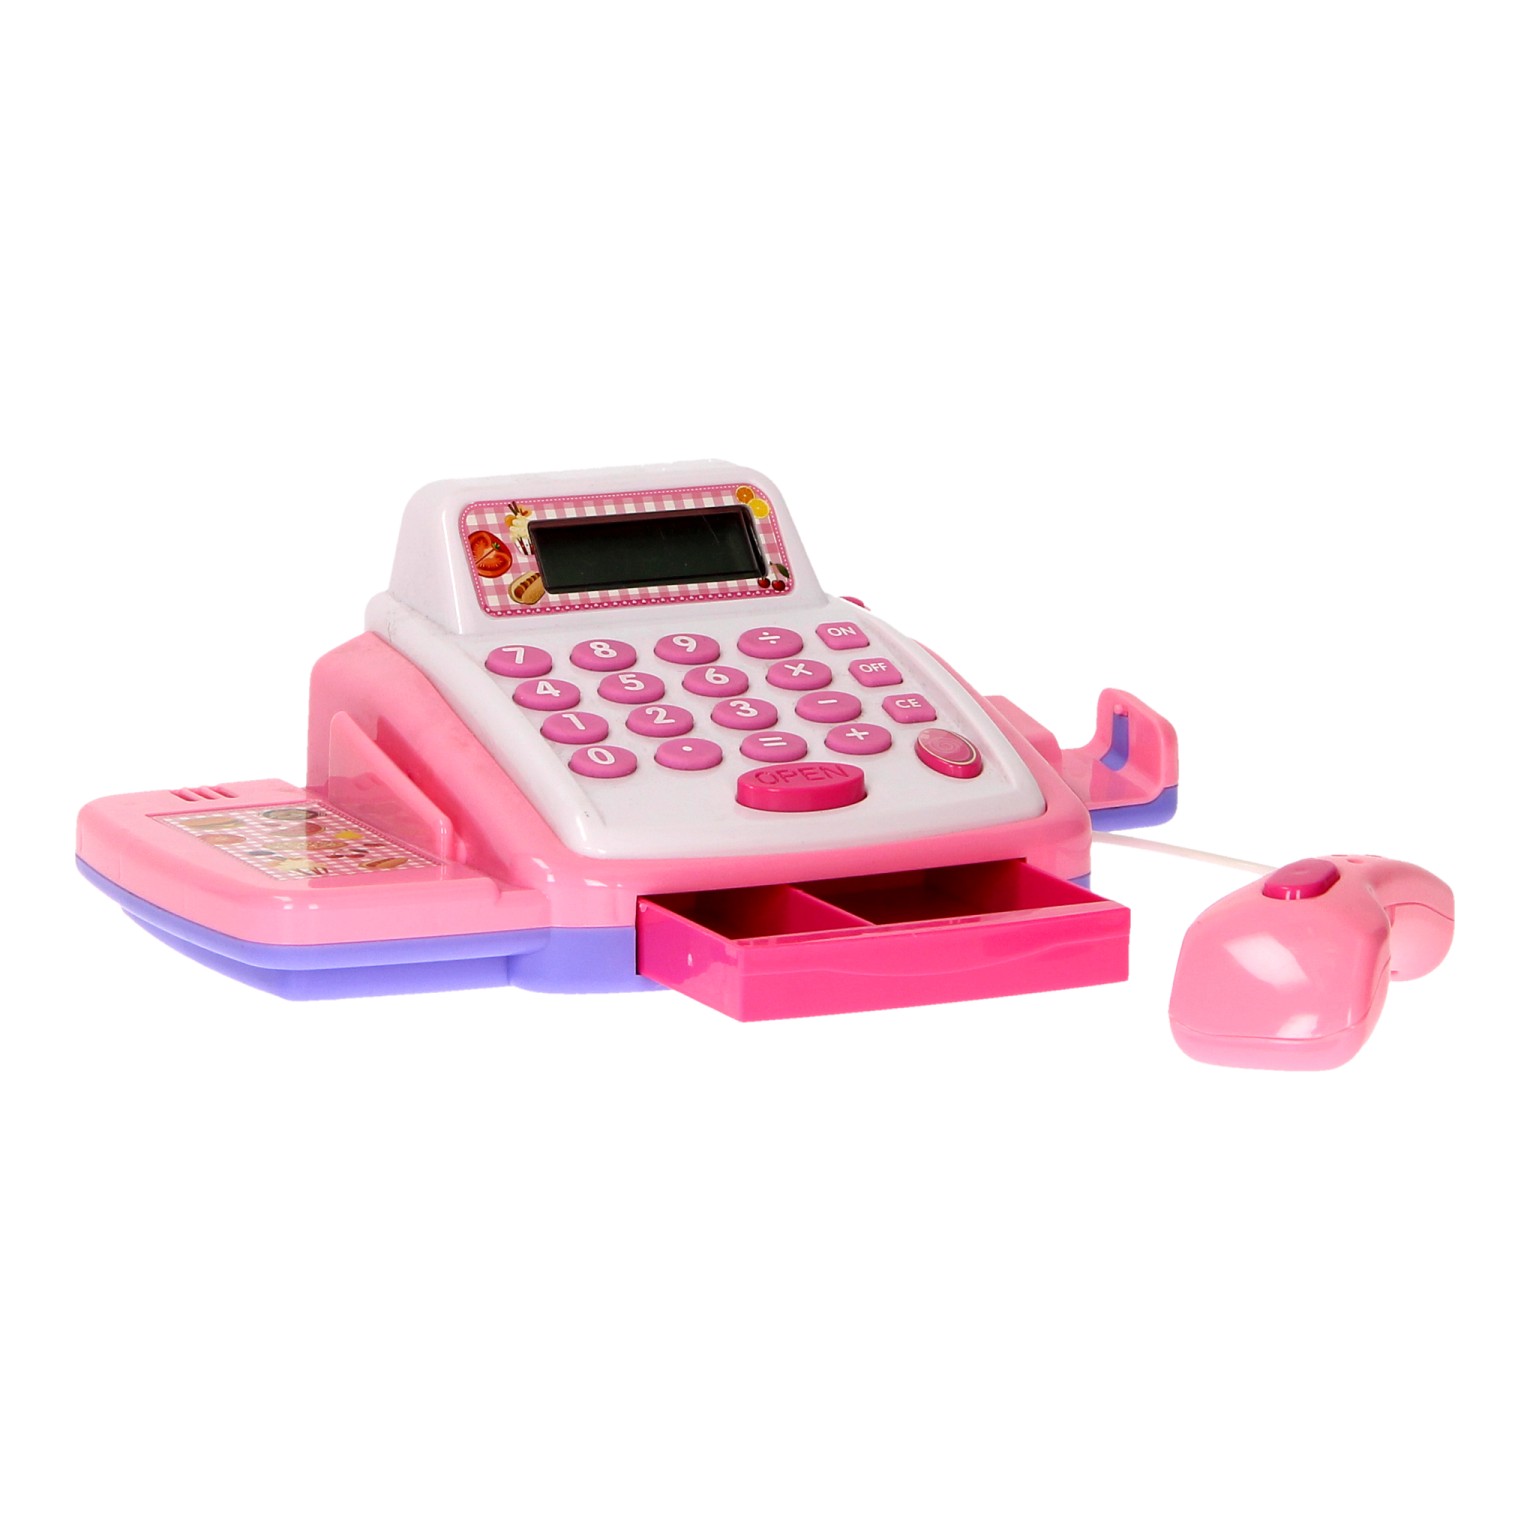 Caisse enregistreuse jouet rose